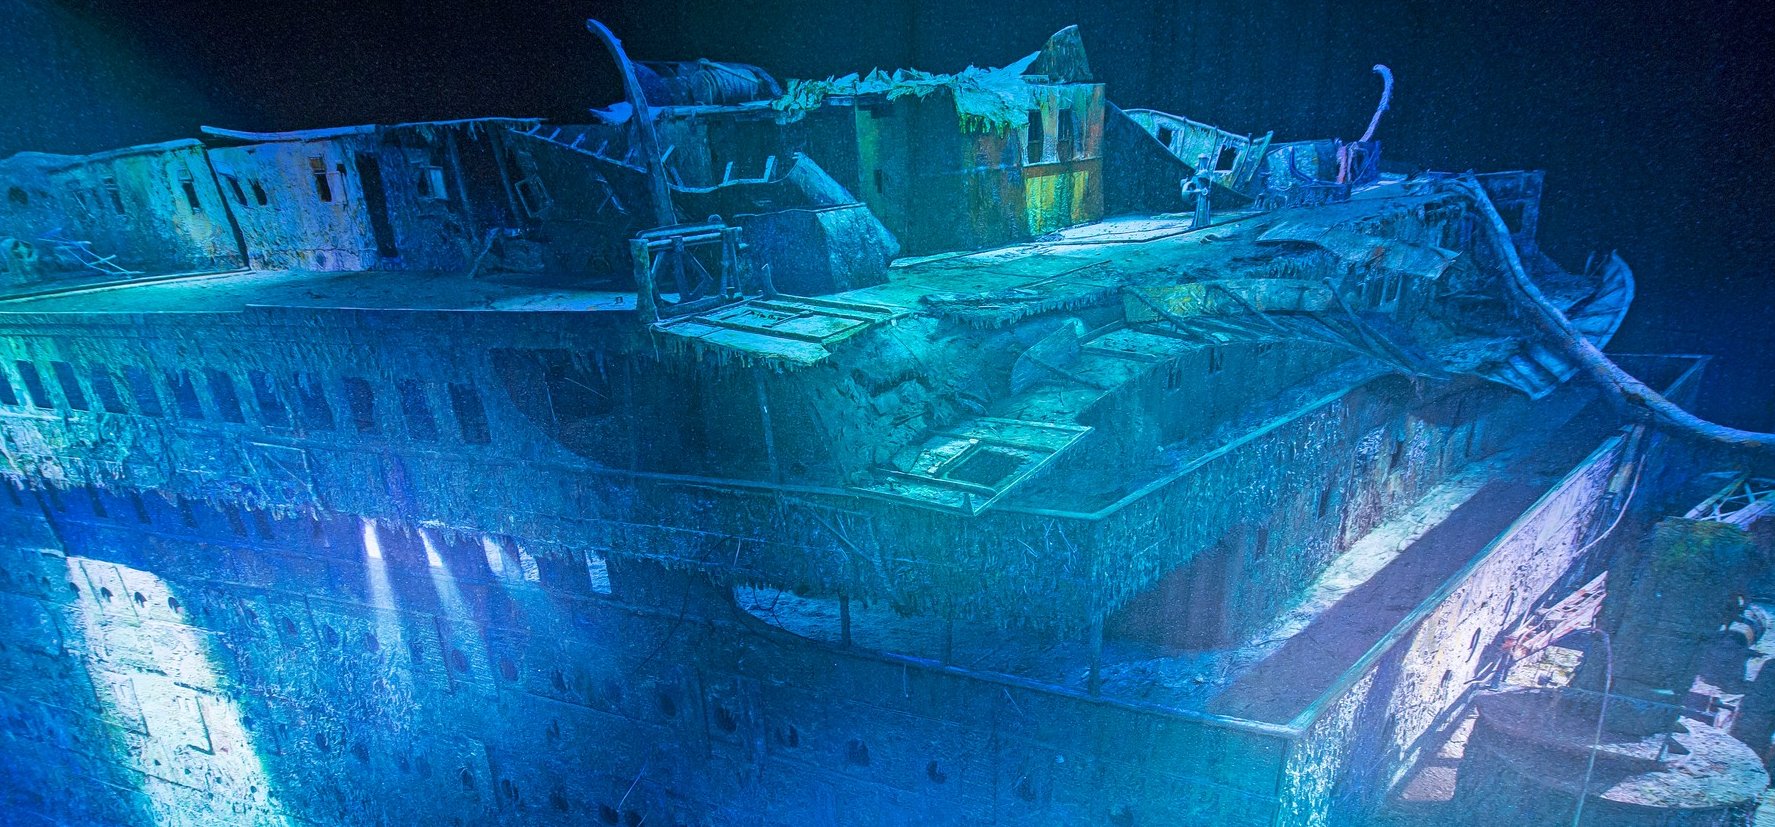 Így fog kinézni a Titanic 500 év múlva, egyelőre esély sincs arra, hogy kihalásszuk az óceán fenekéről